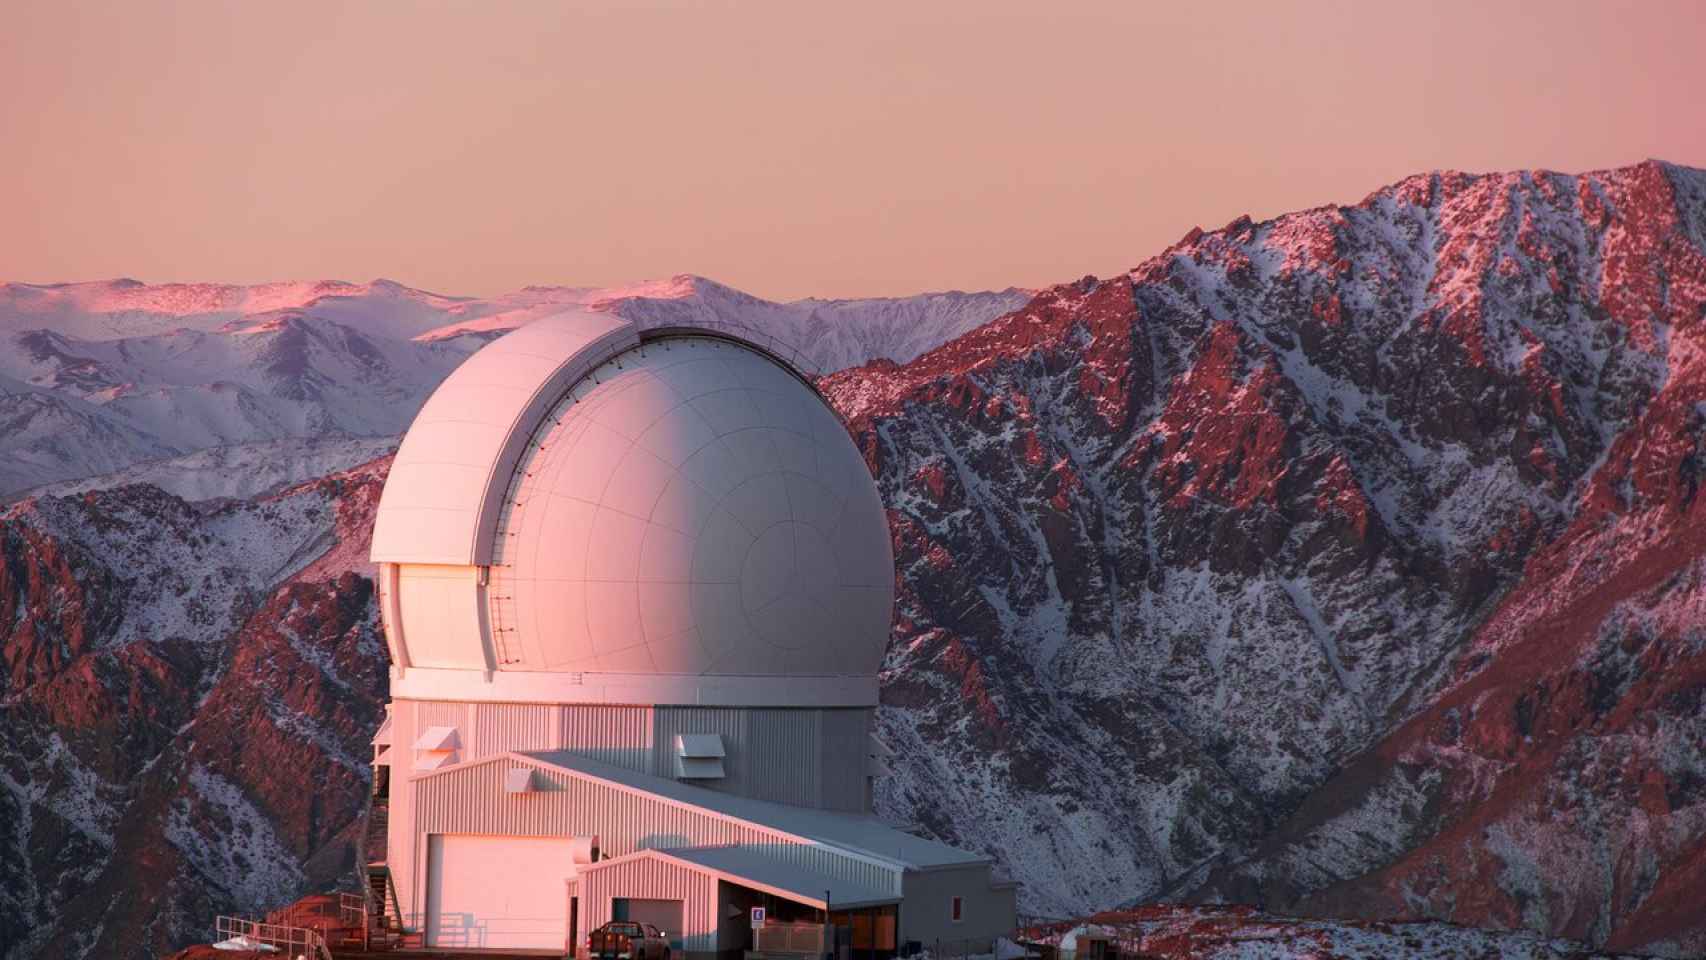 Telescopio SOAR